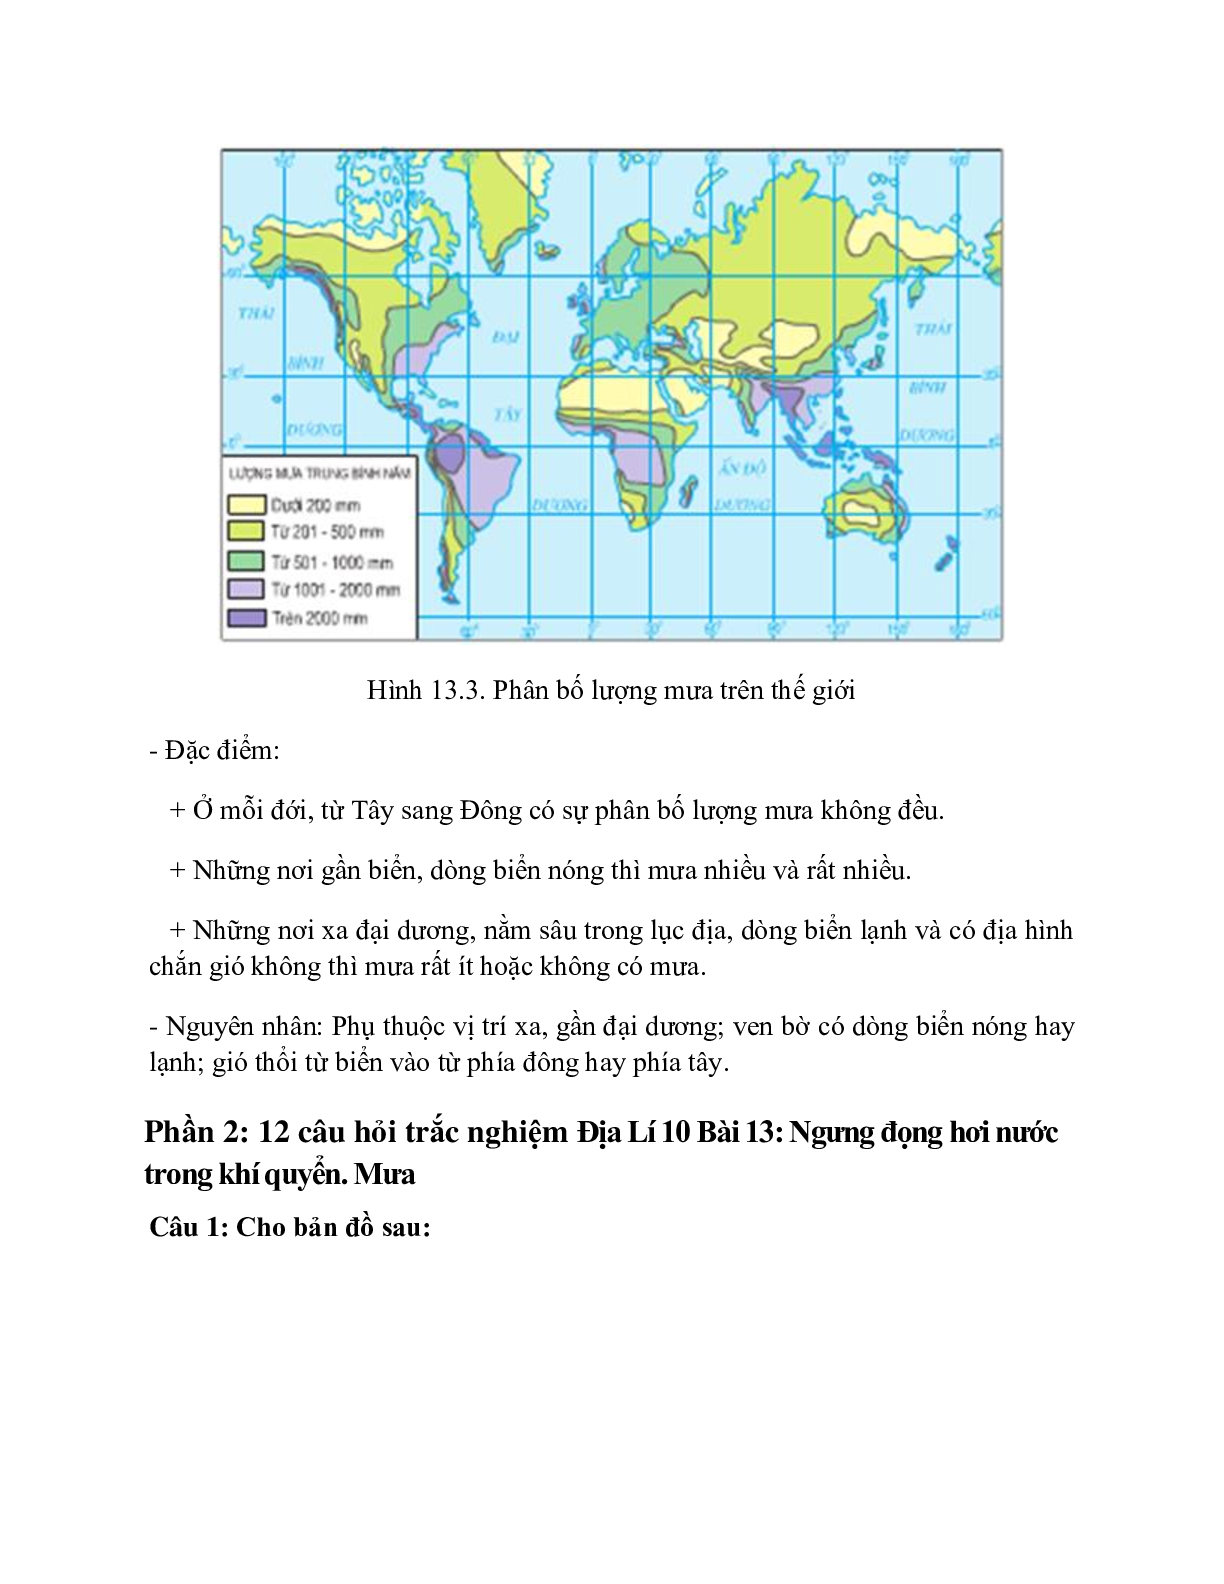 Địa Lí 10 Bài 13 (Lý thuyết và trắc nghiệm): Ngưng đọng hơi nước trong khí quyển. Mưa (trang 4)